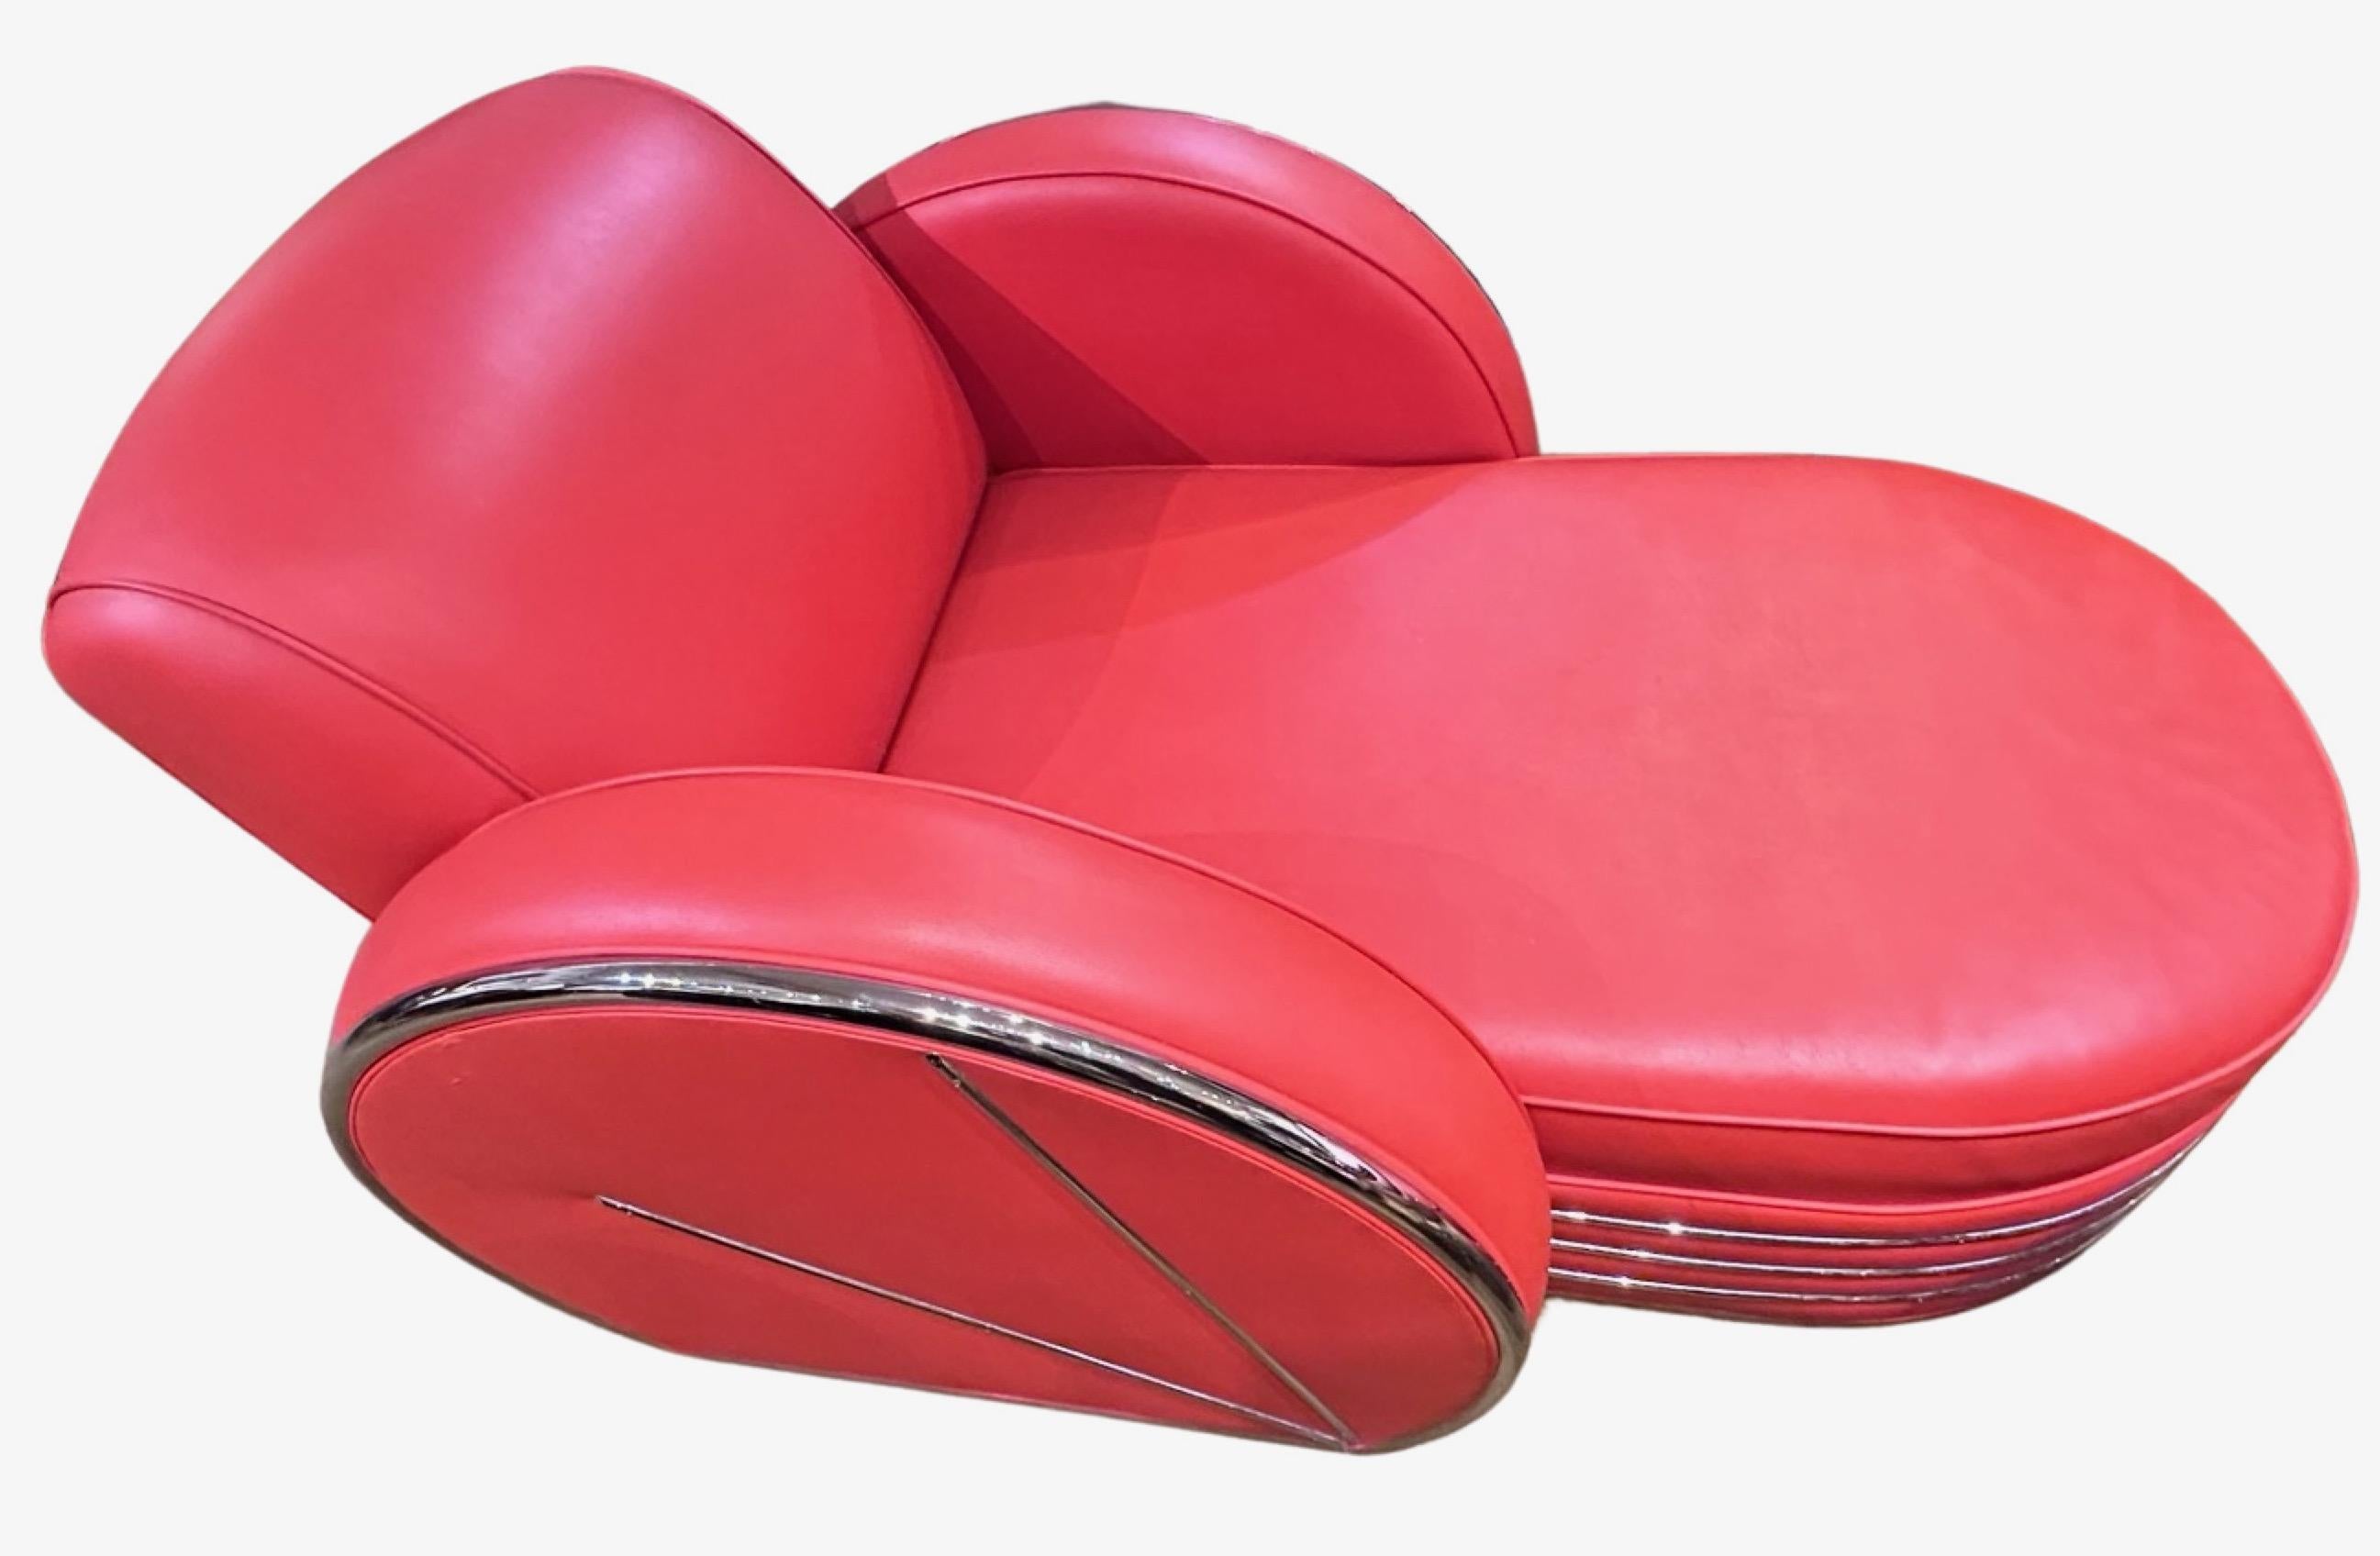 Donald Deskey Design/One Art Deco Sofa Chaise Lounge. Traitement aérodynamique Art déco unique attribué à Deskey, car cet objet a été reproduit après les années 1930′s, probablement jusque dans les années 1990. Difficile à trouver, très haute